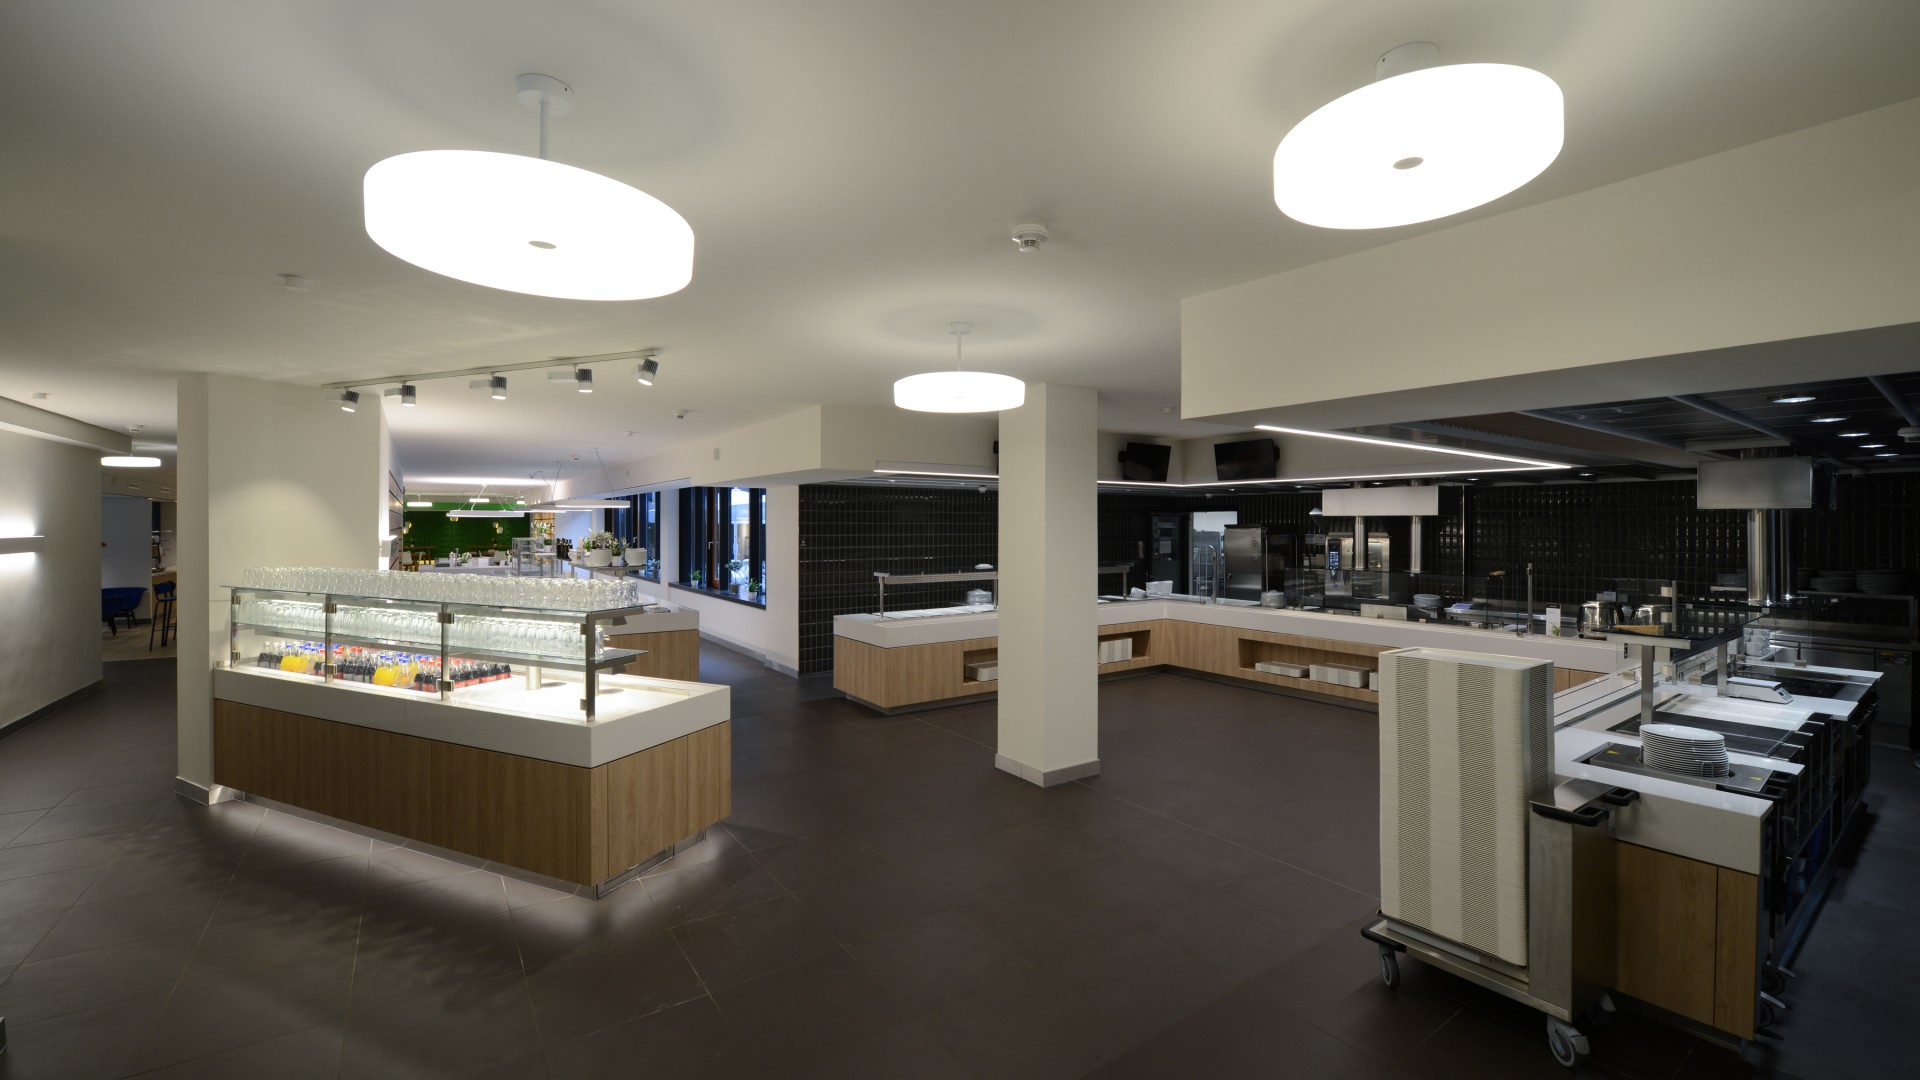 Galeriebild / Reemtsma Betriebsrestaurant, Modernisierung des Betriebsrestaurants in Hamburg